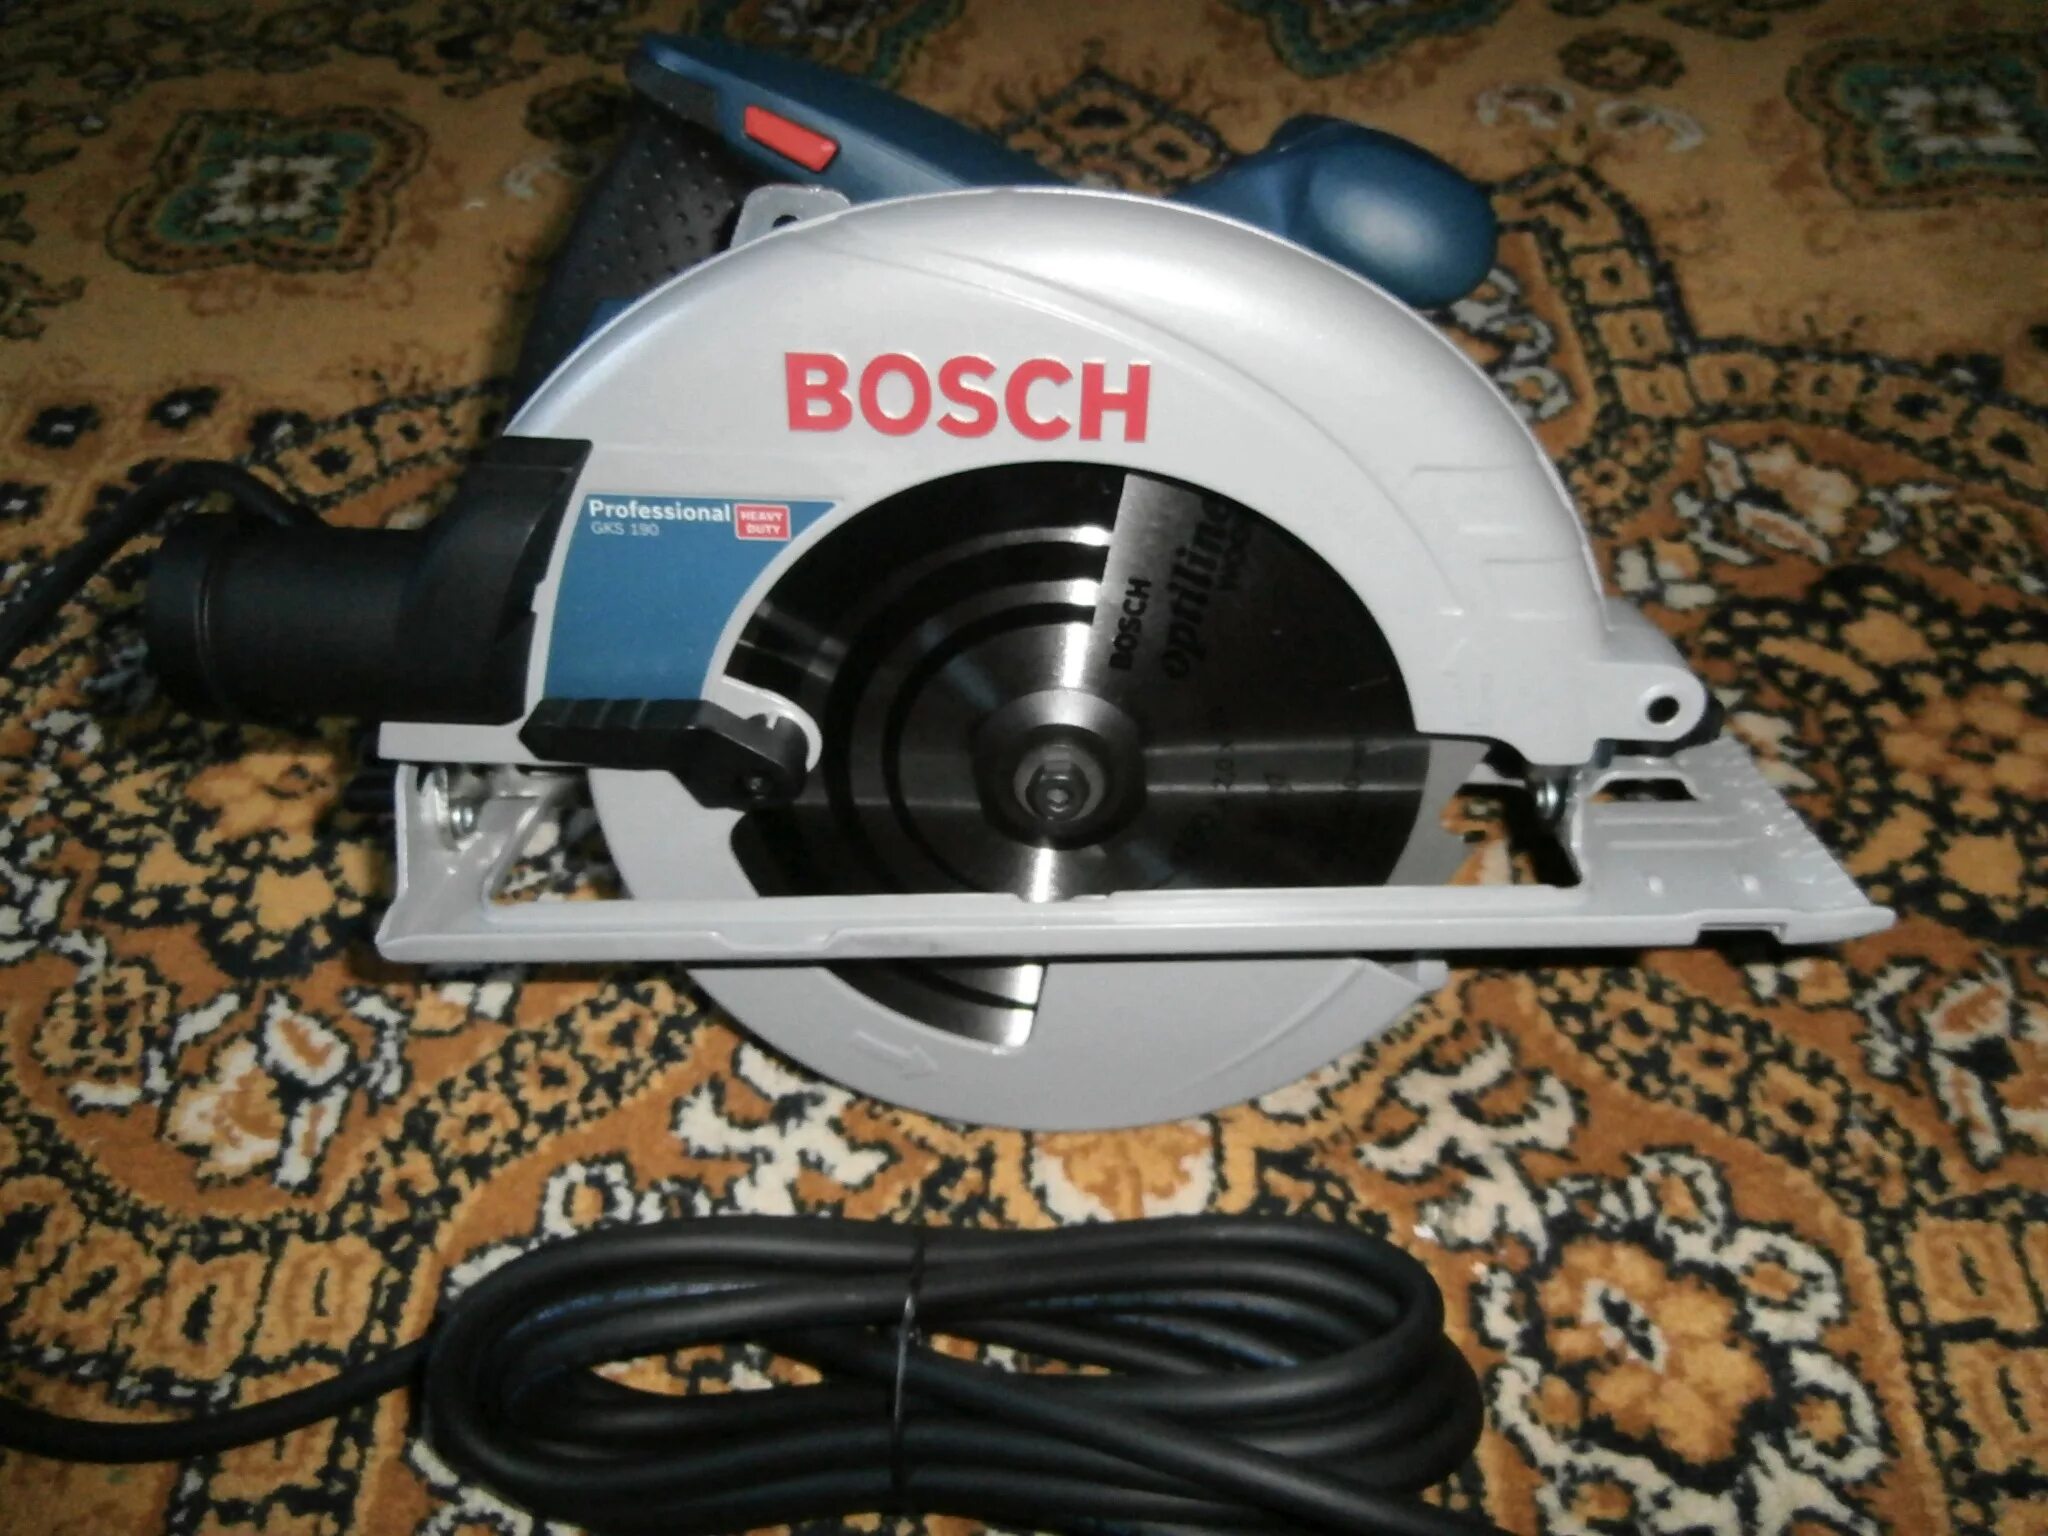 Bosch 190 купить. Bosch GKS 190. Пила дисковая Bosch GKS 190. Дисковая пила Bosch GKS 190 0.601.623.000. Направляющая для Bosch GKS 190.